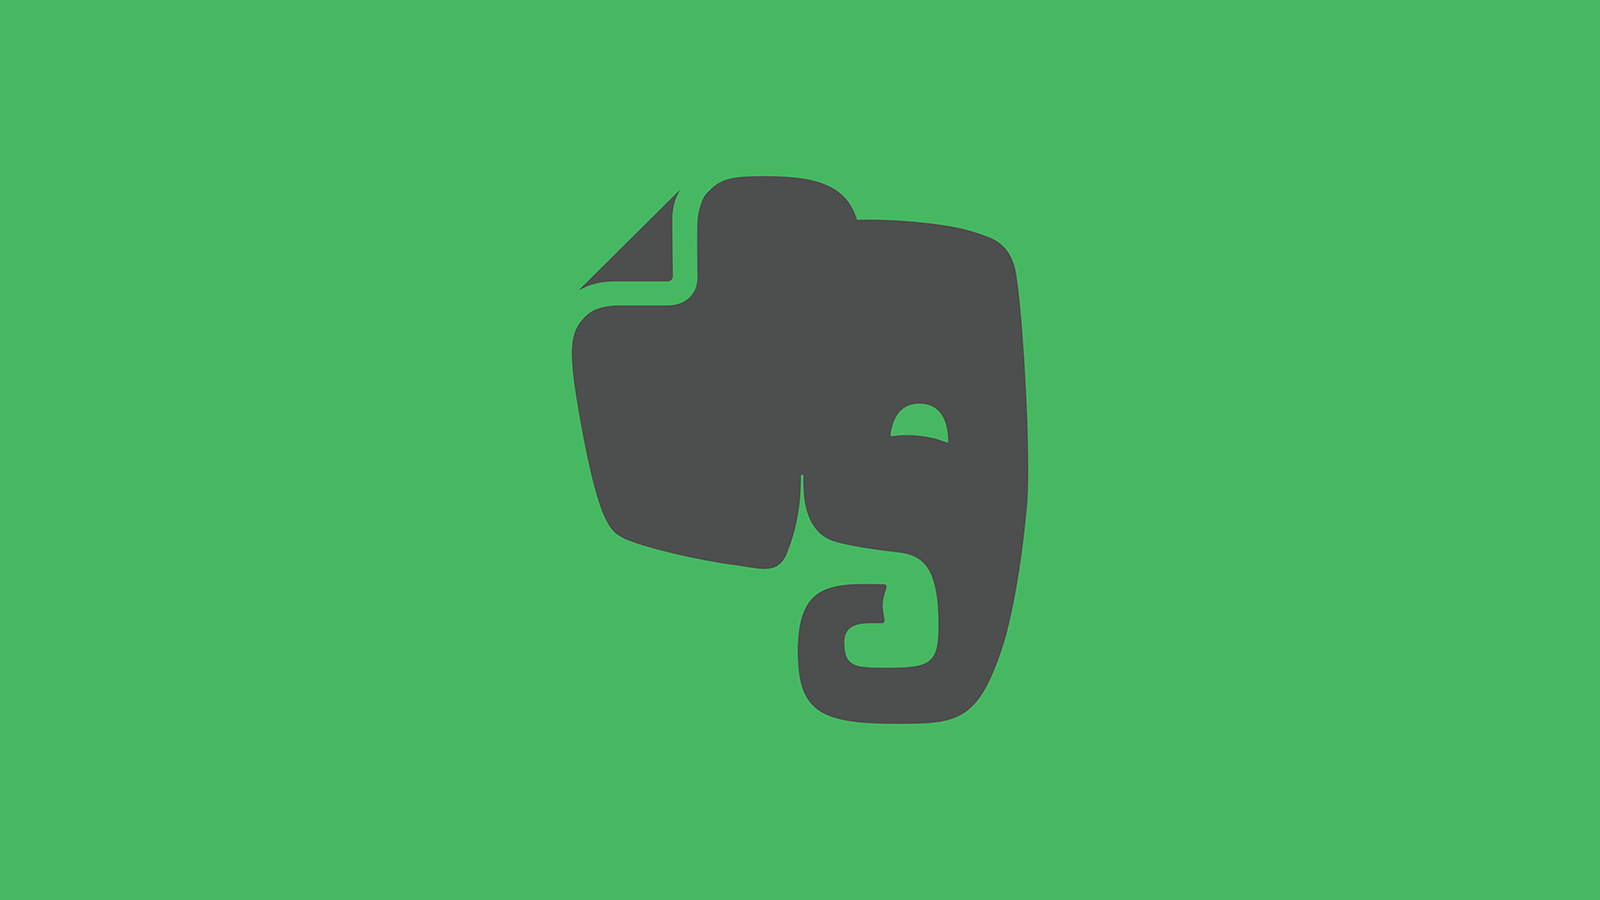 Evernote Logo - Turning an Elephant